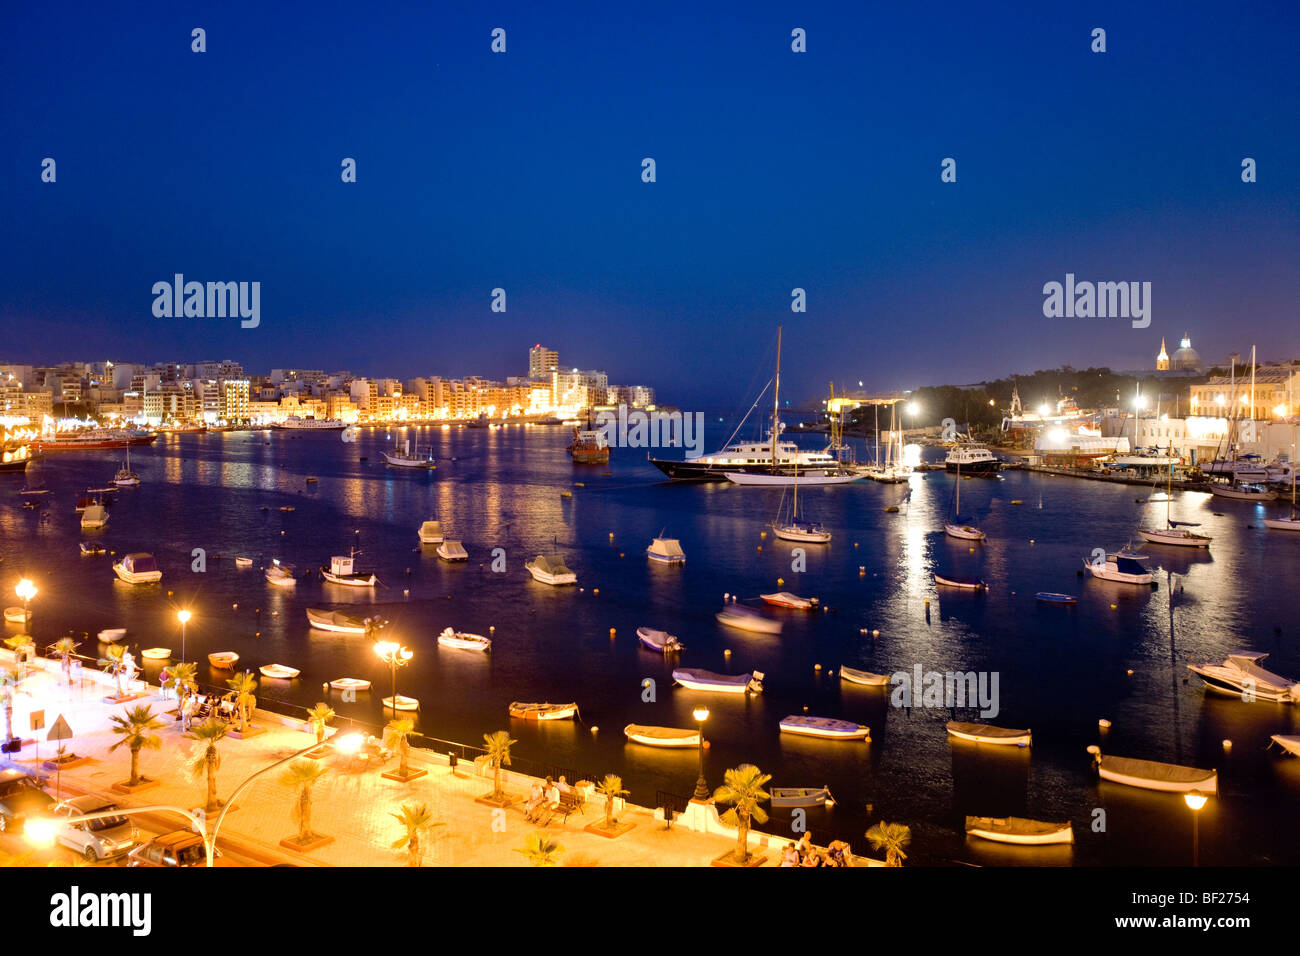 View at the illuminated promenade at Marsamxett Harbour, Sliema Creek, Sliema, Malta, Europe Stock Photo